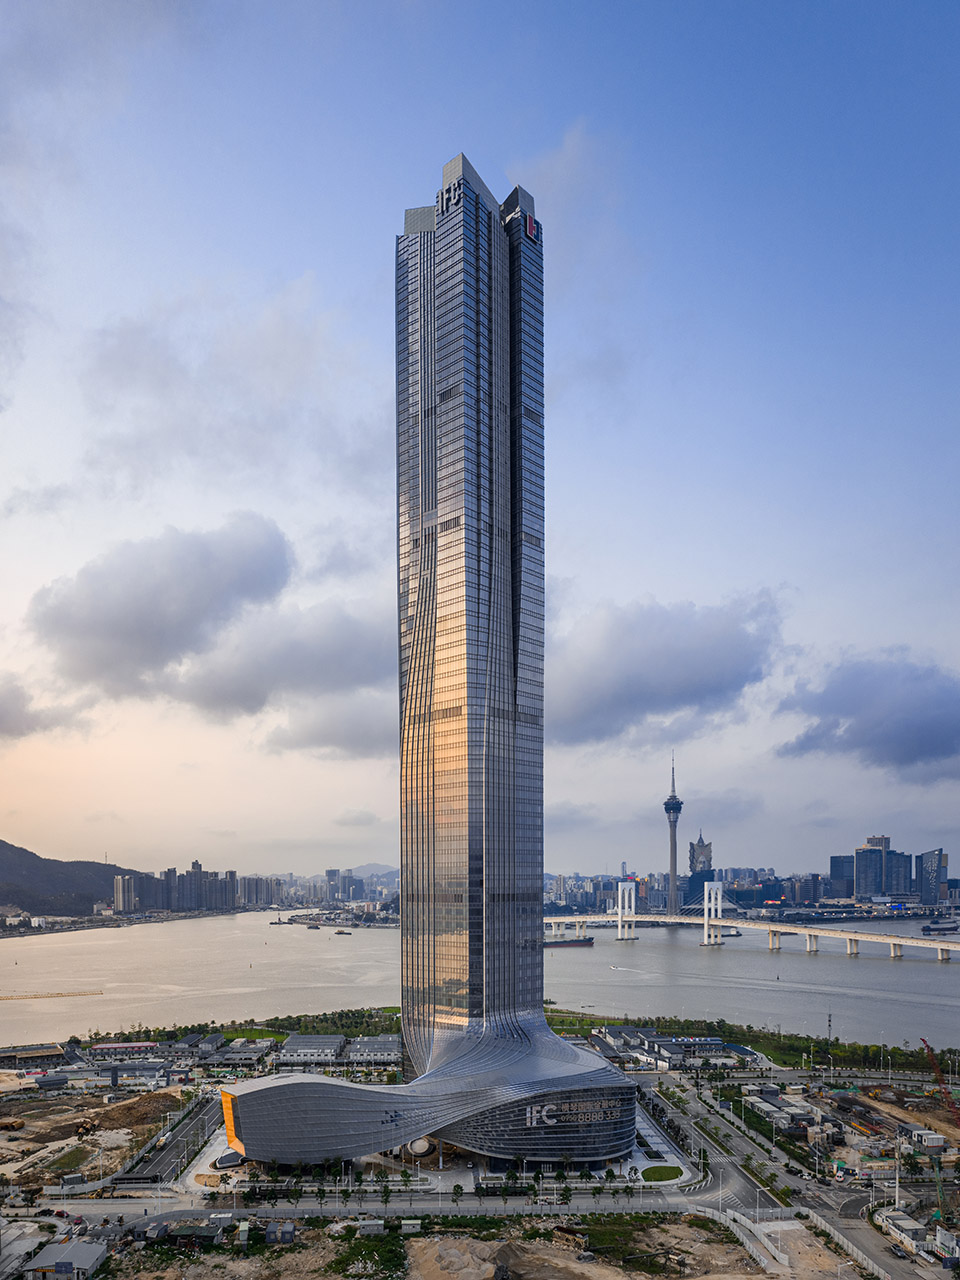 横琴国际金融中心，珠海/珠澳第一高楼，以蛟龙出海打造中国新力量-5